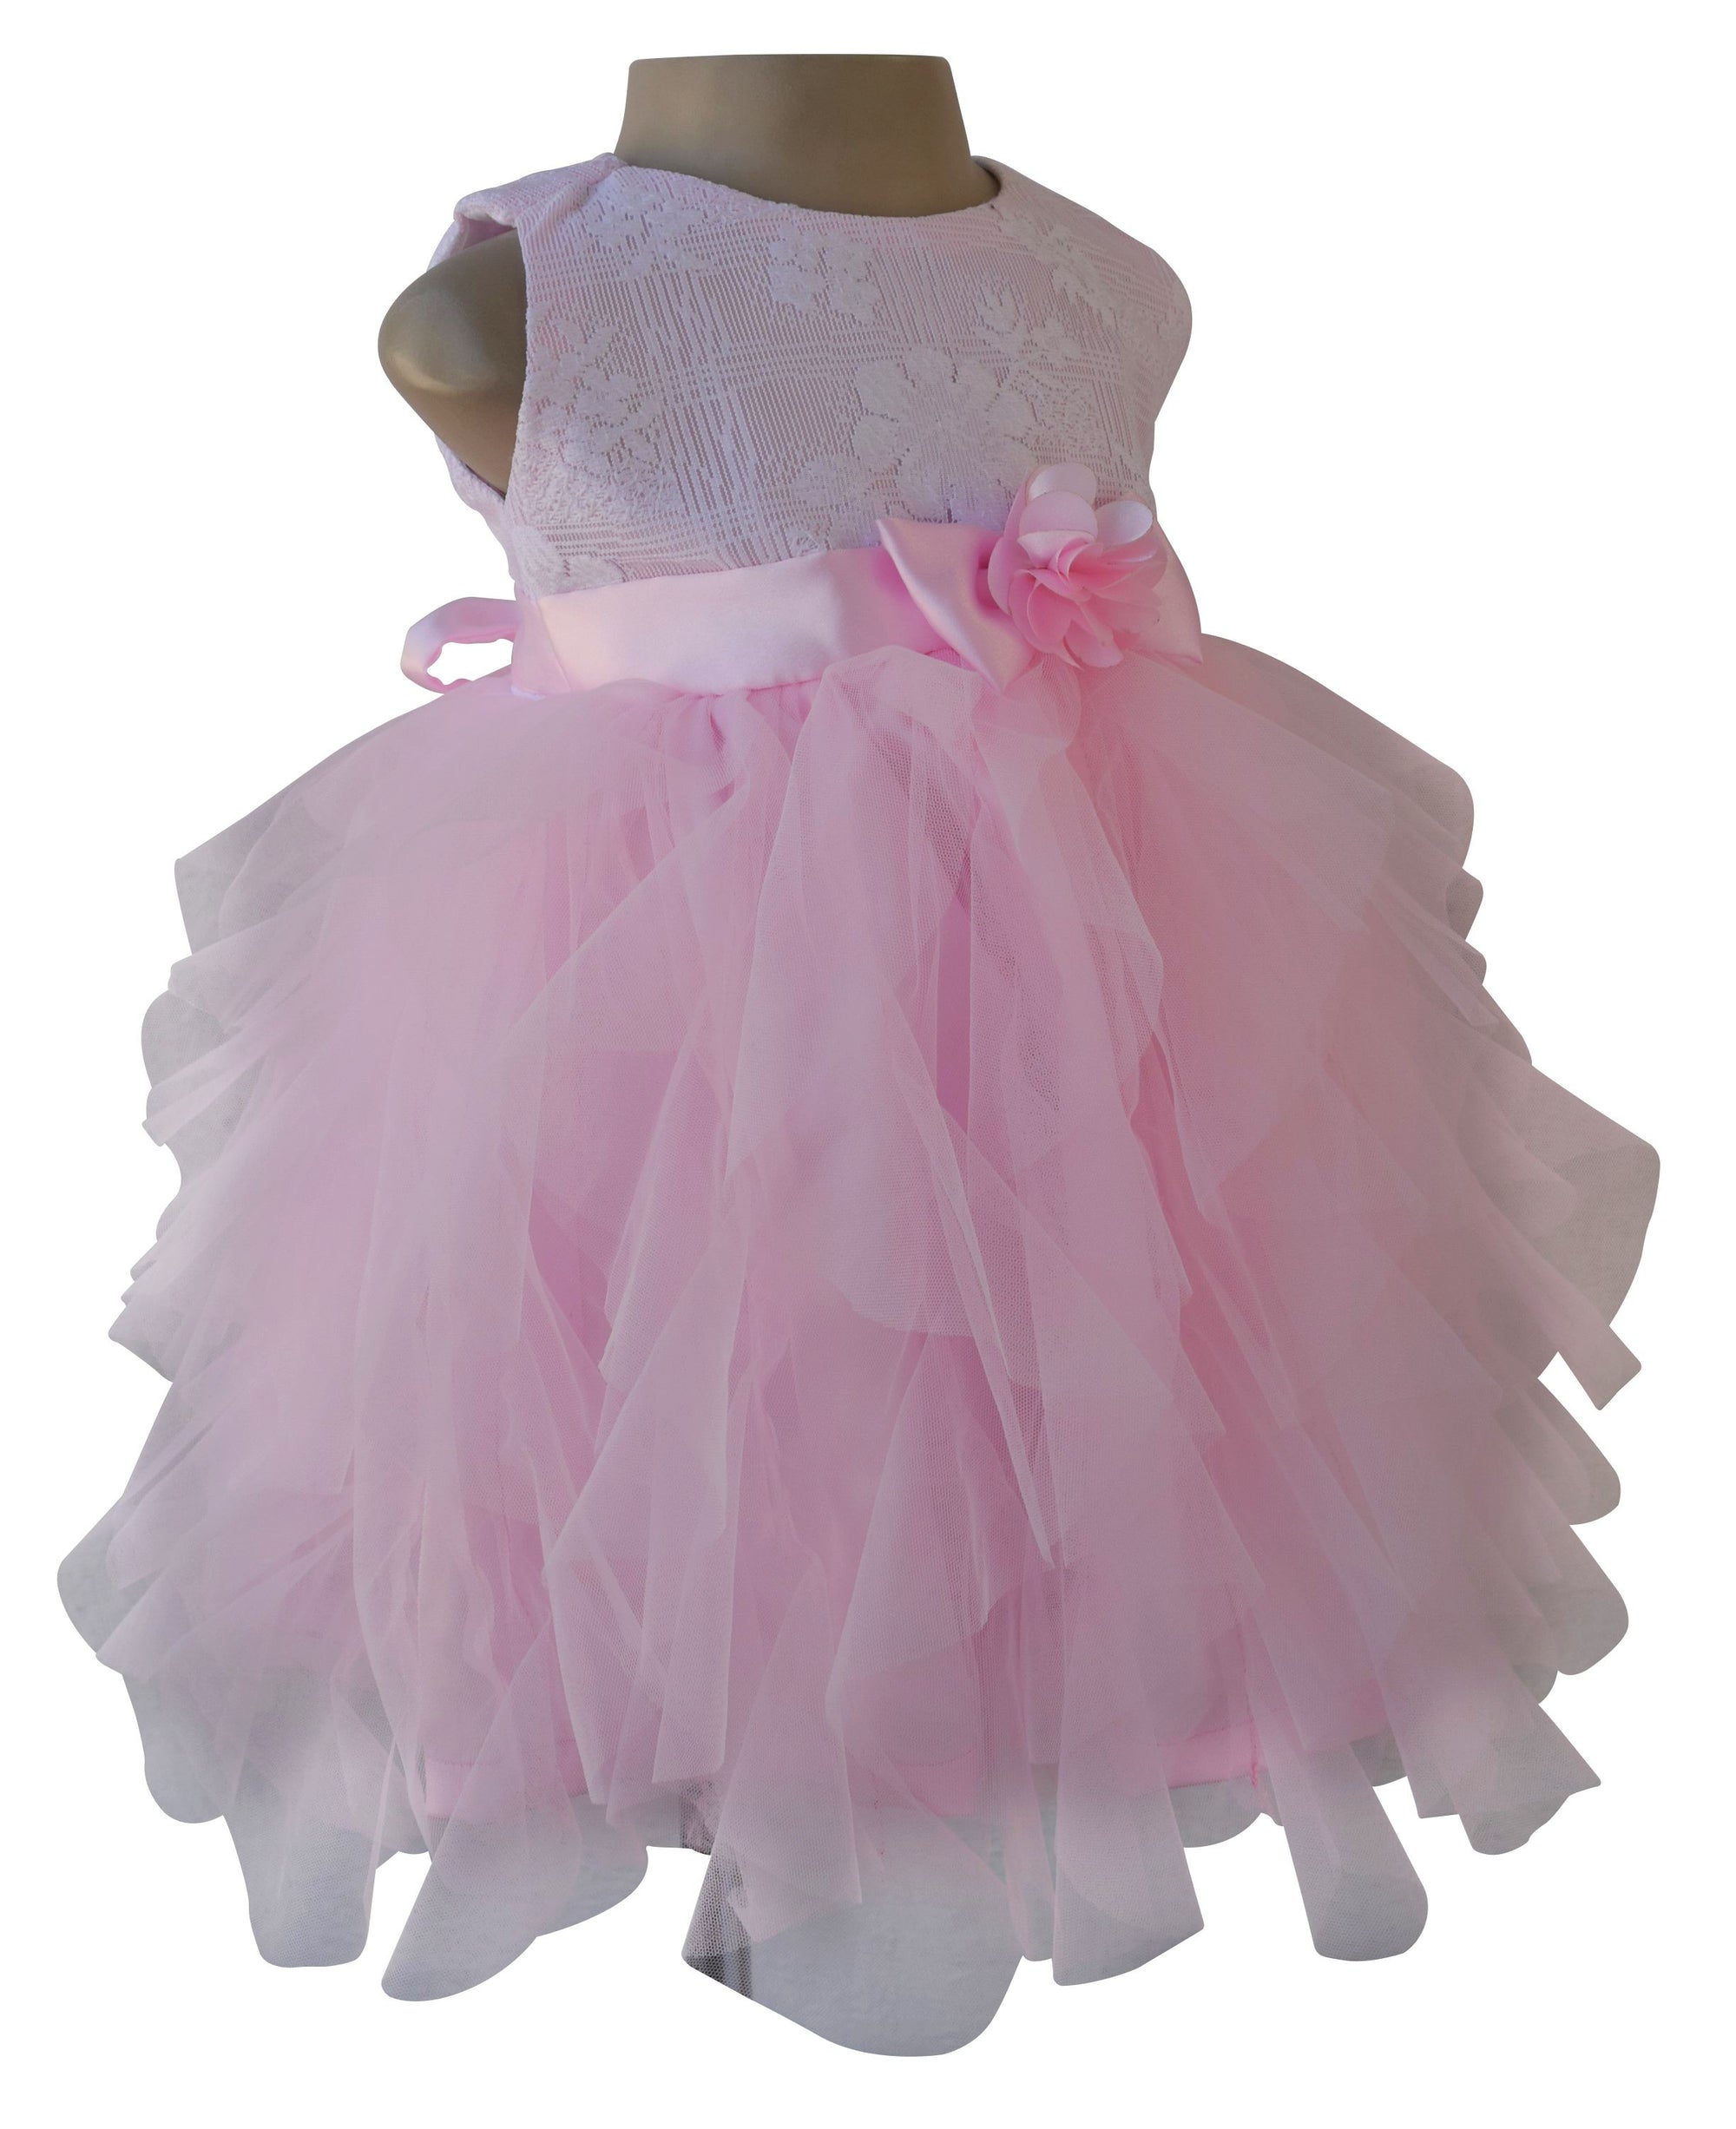 Baby Dress_Faye Pink & White Waterfall Party Dress